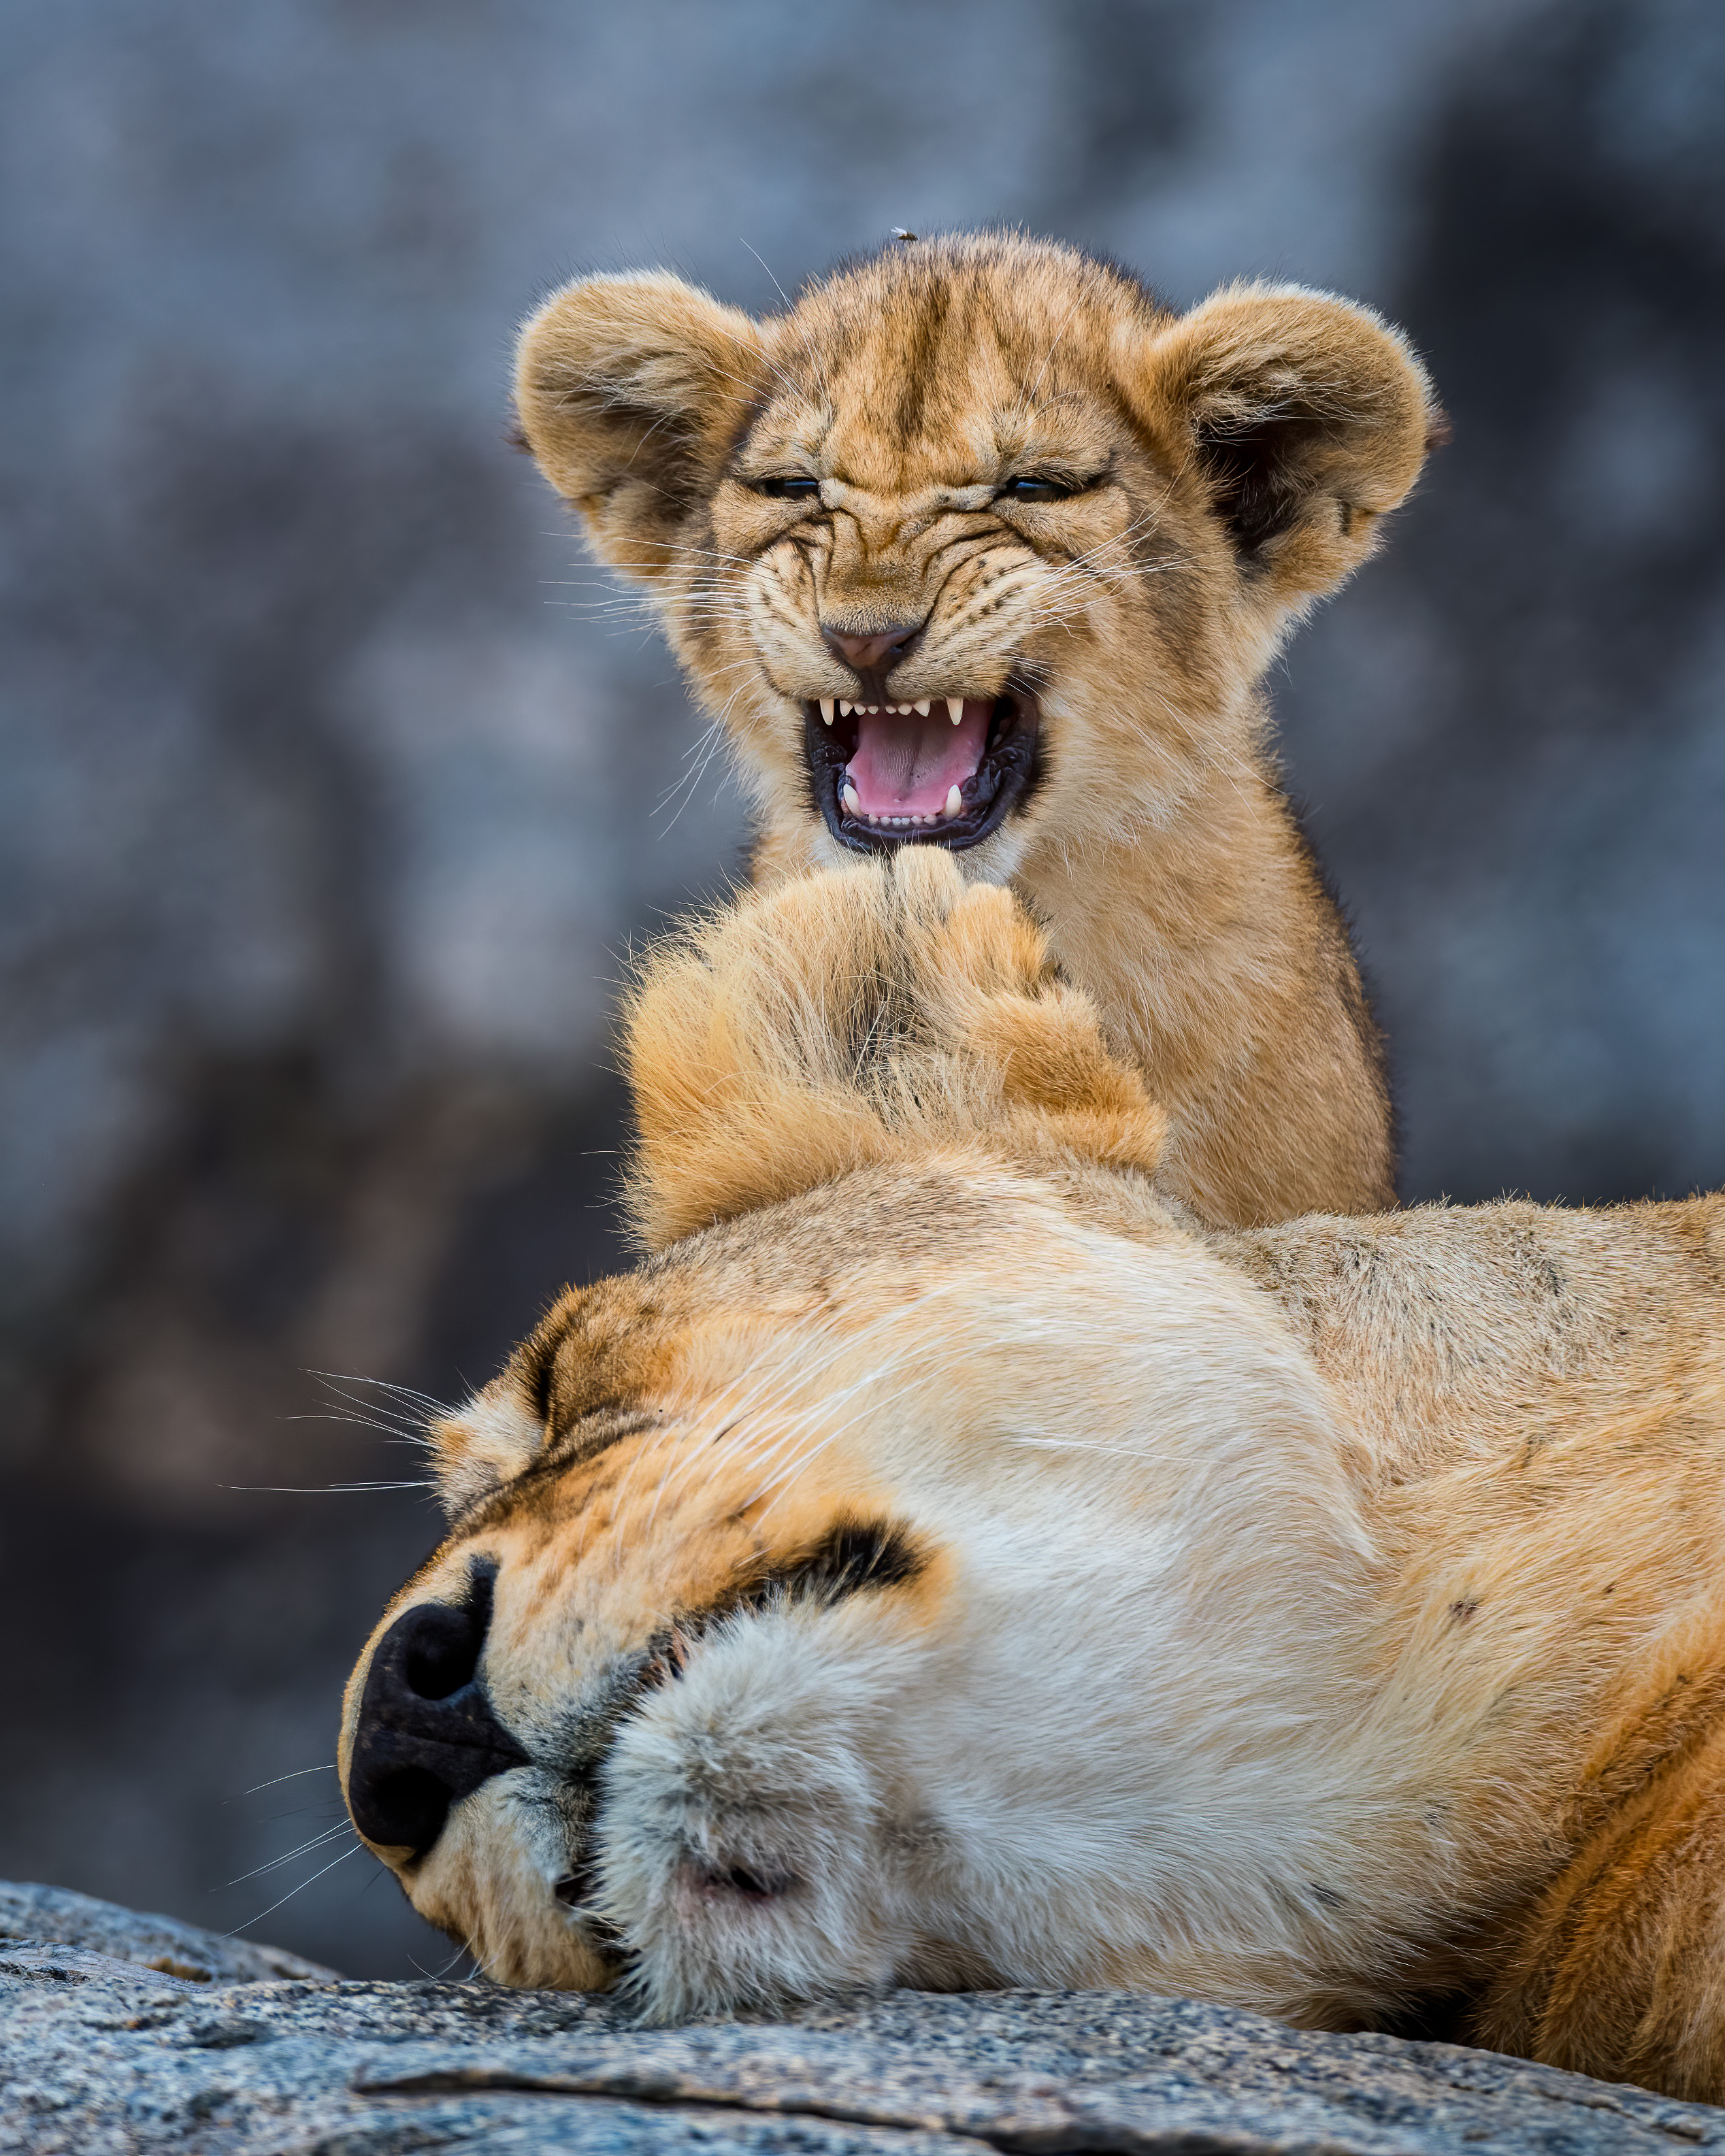 Una leonessa vuole dormire ma il cucciolo ha altri piani